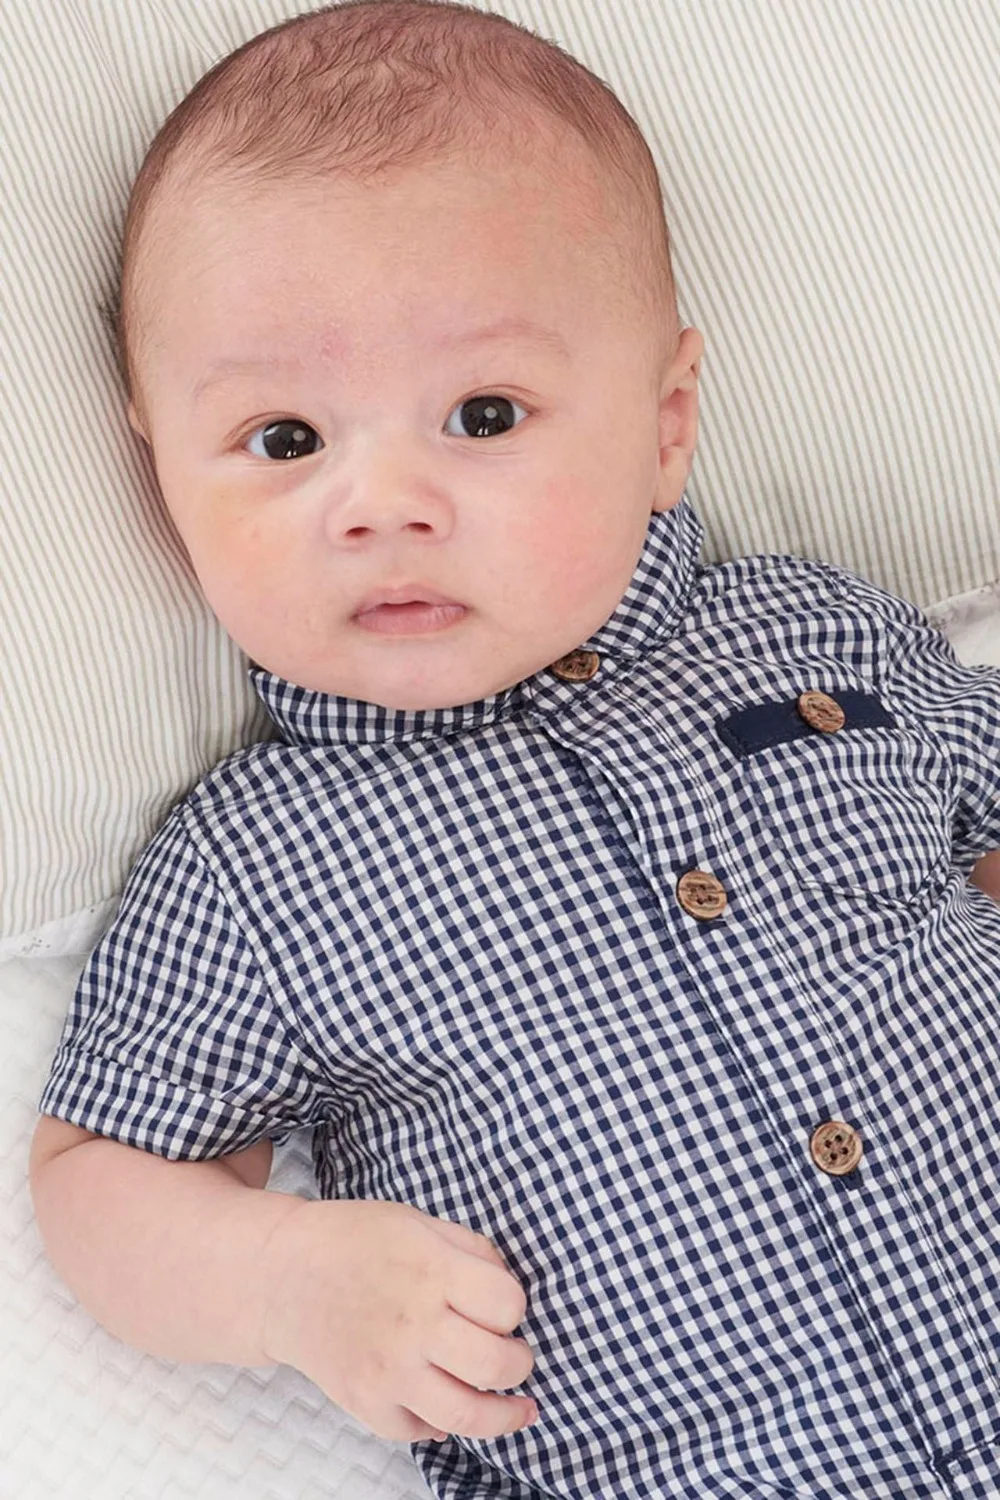 Клетчатые костюмы для новорожденных мальчиков Формальный джентльменский стиль для новорожденных, хлопковая одежда цельнокроеный костюм детский комбинезон на возраст от 0 до 24 месяцев